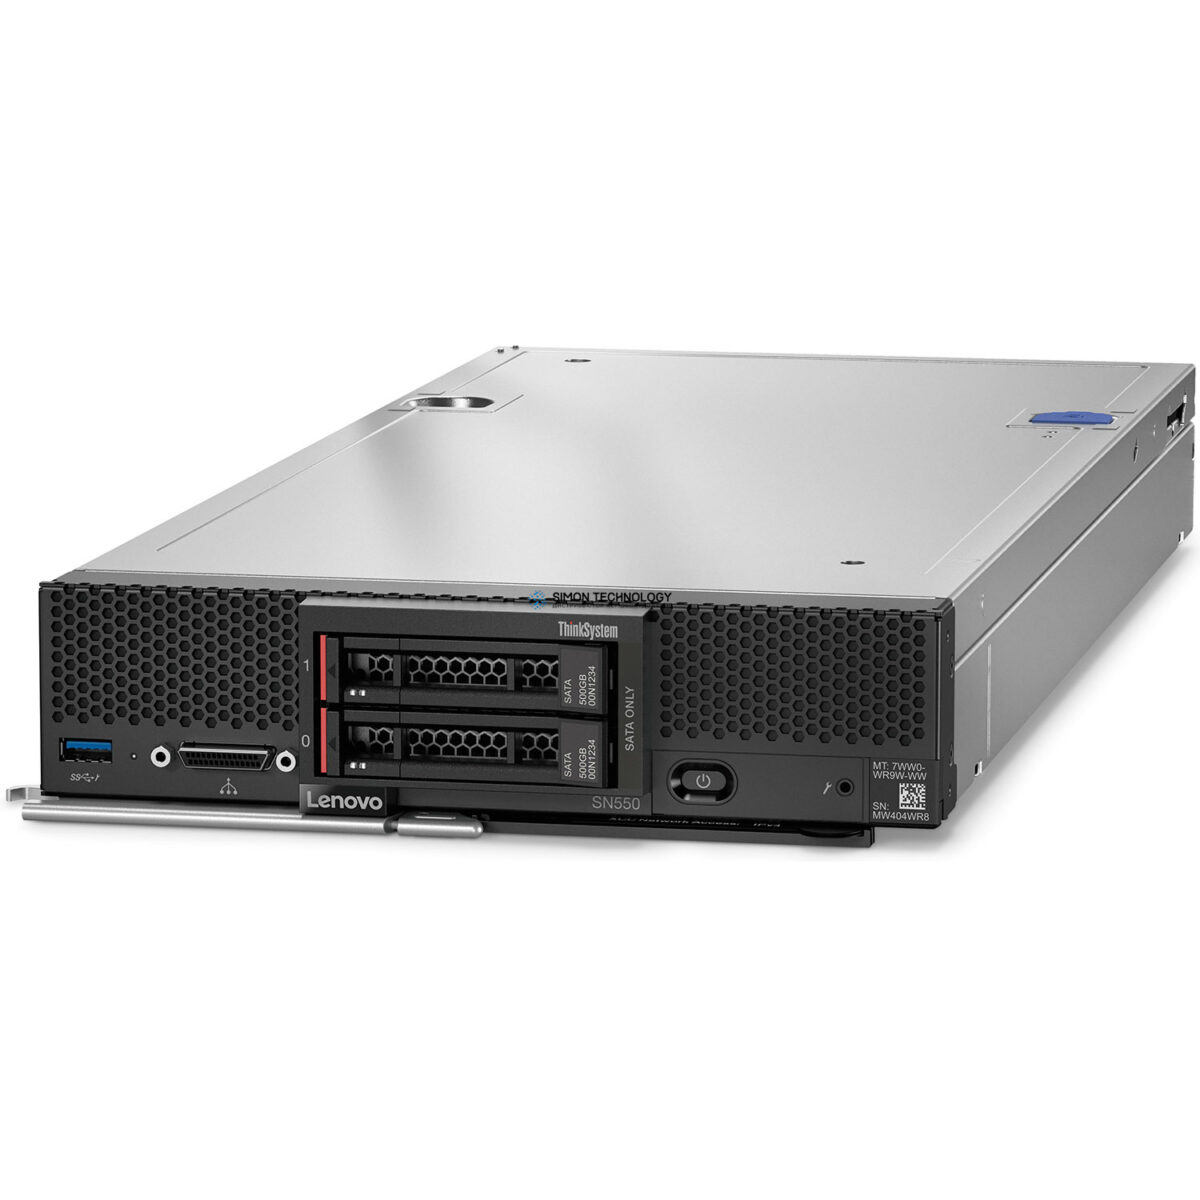 Сервер Lenovo SN550 Blade Server Configure To Order (7X16-CTO)